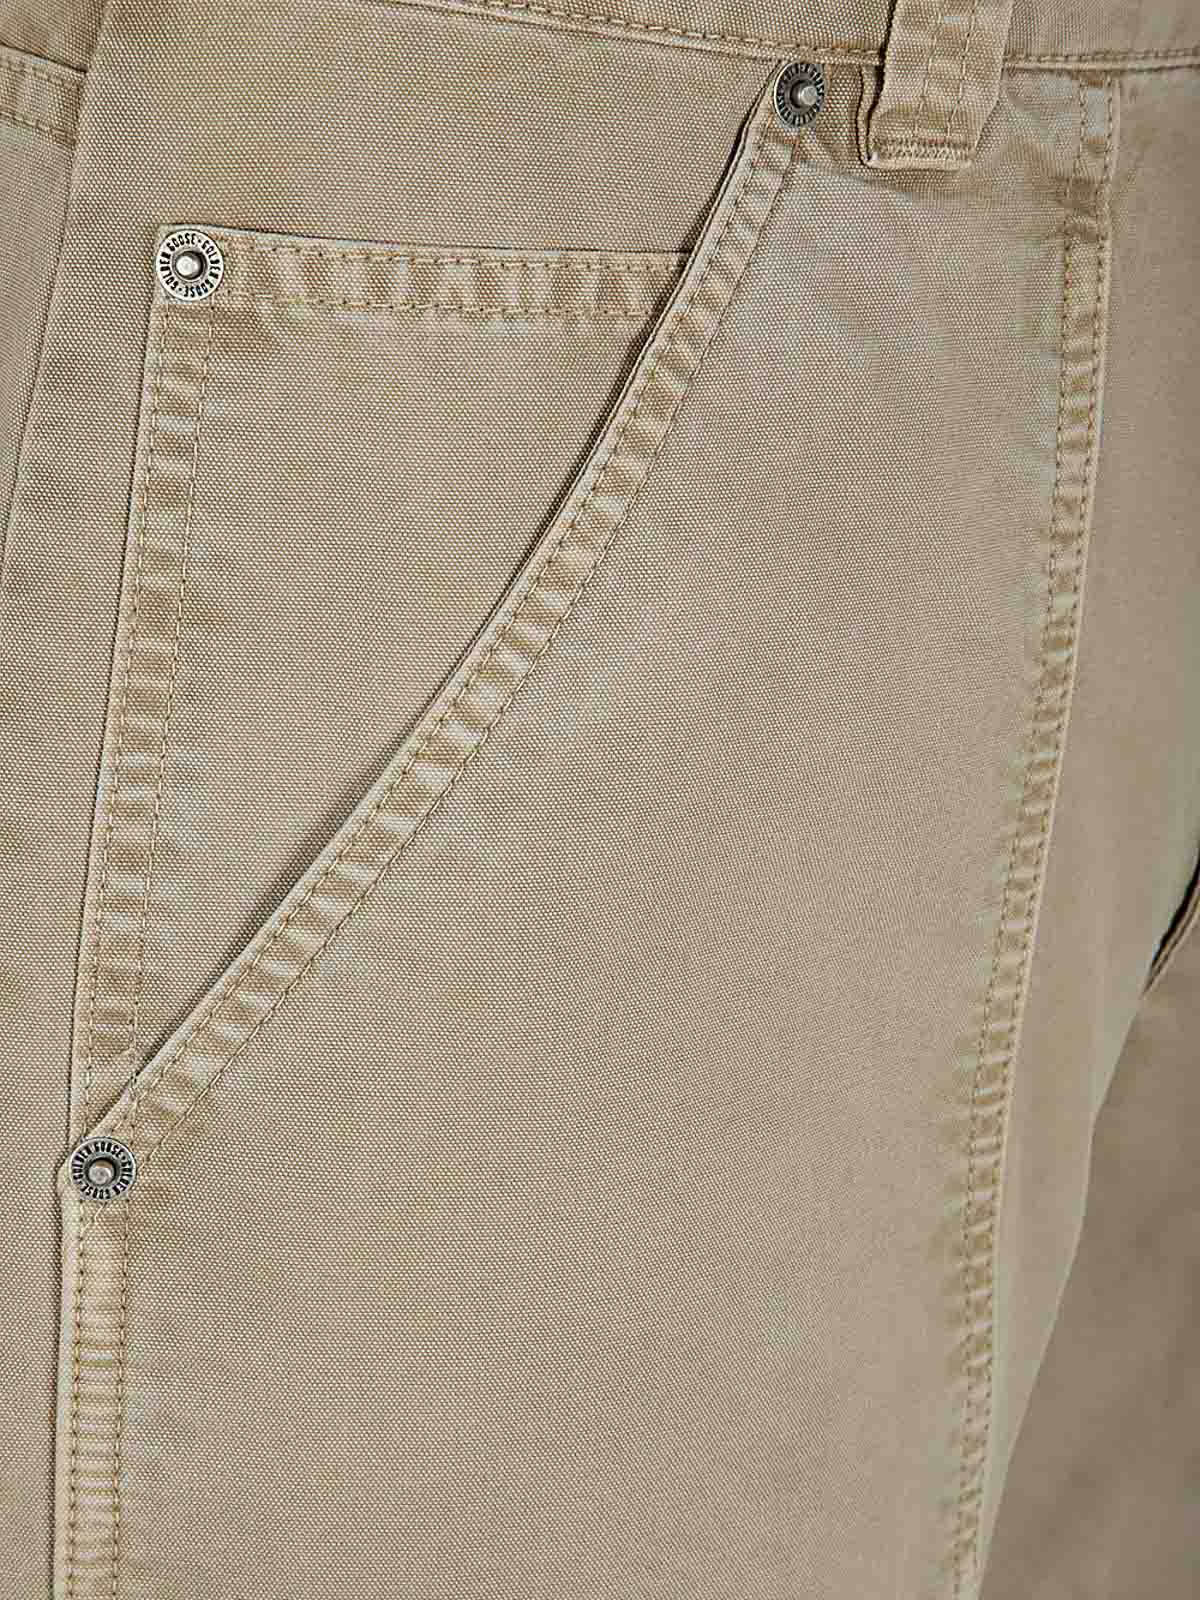 Shop Golden Goose Pantalón Casual - Marrón In Brown